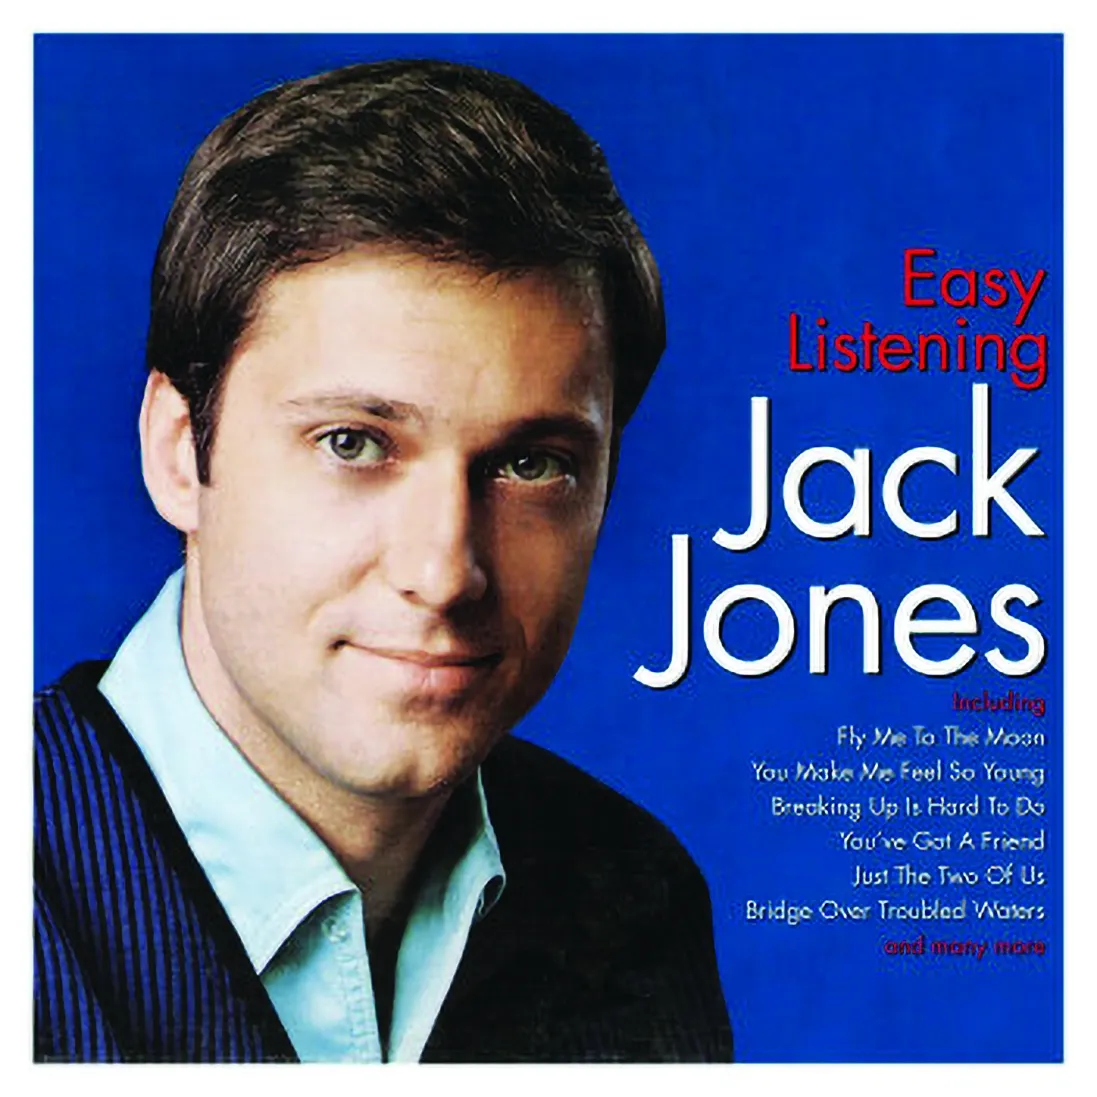 LGC2006-Jack-Jones-Easy-Listening-1-1.webp